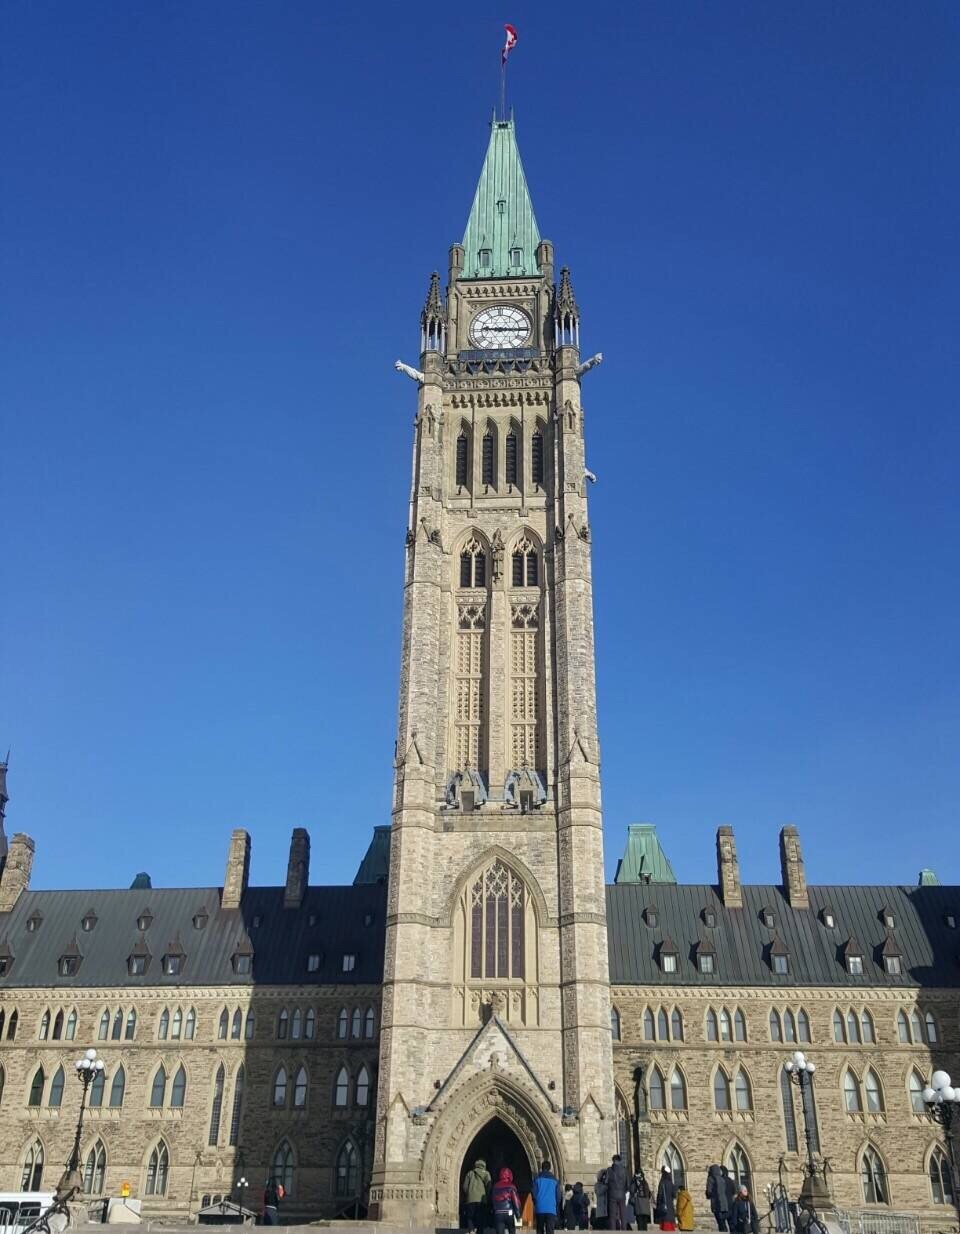 加拿大国会大厦中央耸立着著名的和平塔,和平塔高达90米,被誉为世界